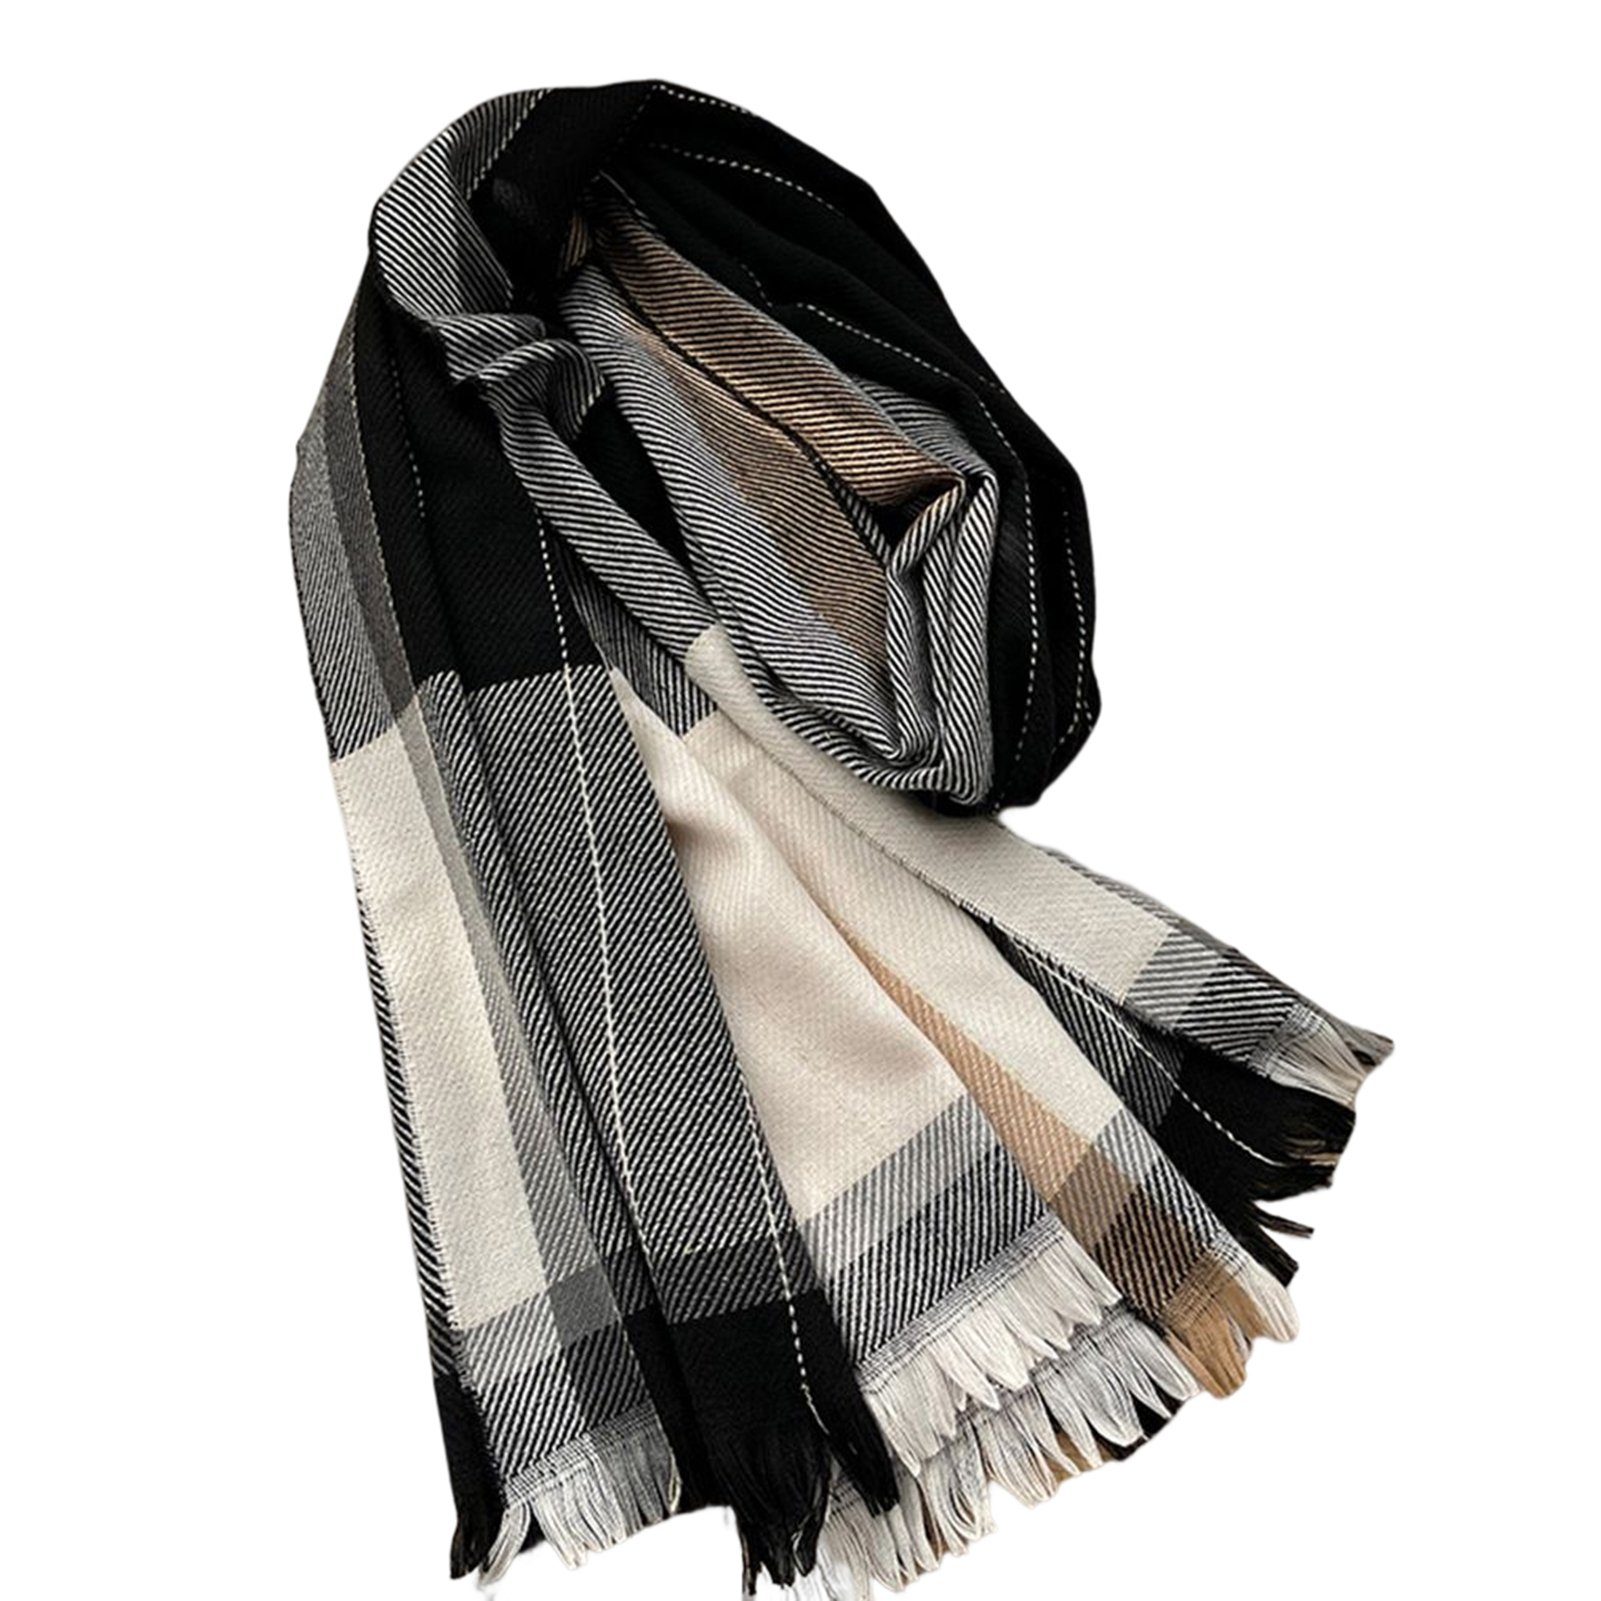 Warm Quaste Modeschal z-striped stripes Winter black-and-white Schal Für Frauen Blusmart Lang-Stil wild Mode Plaid Quaste Schal